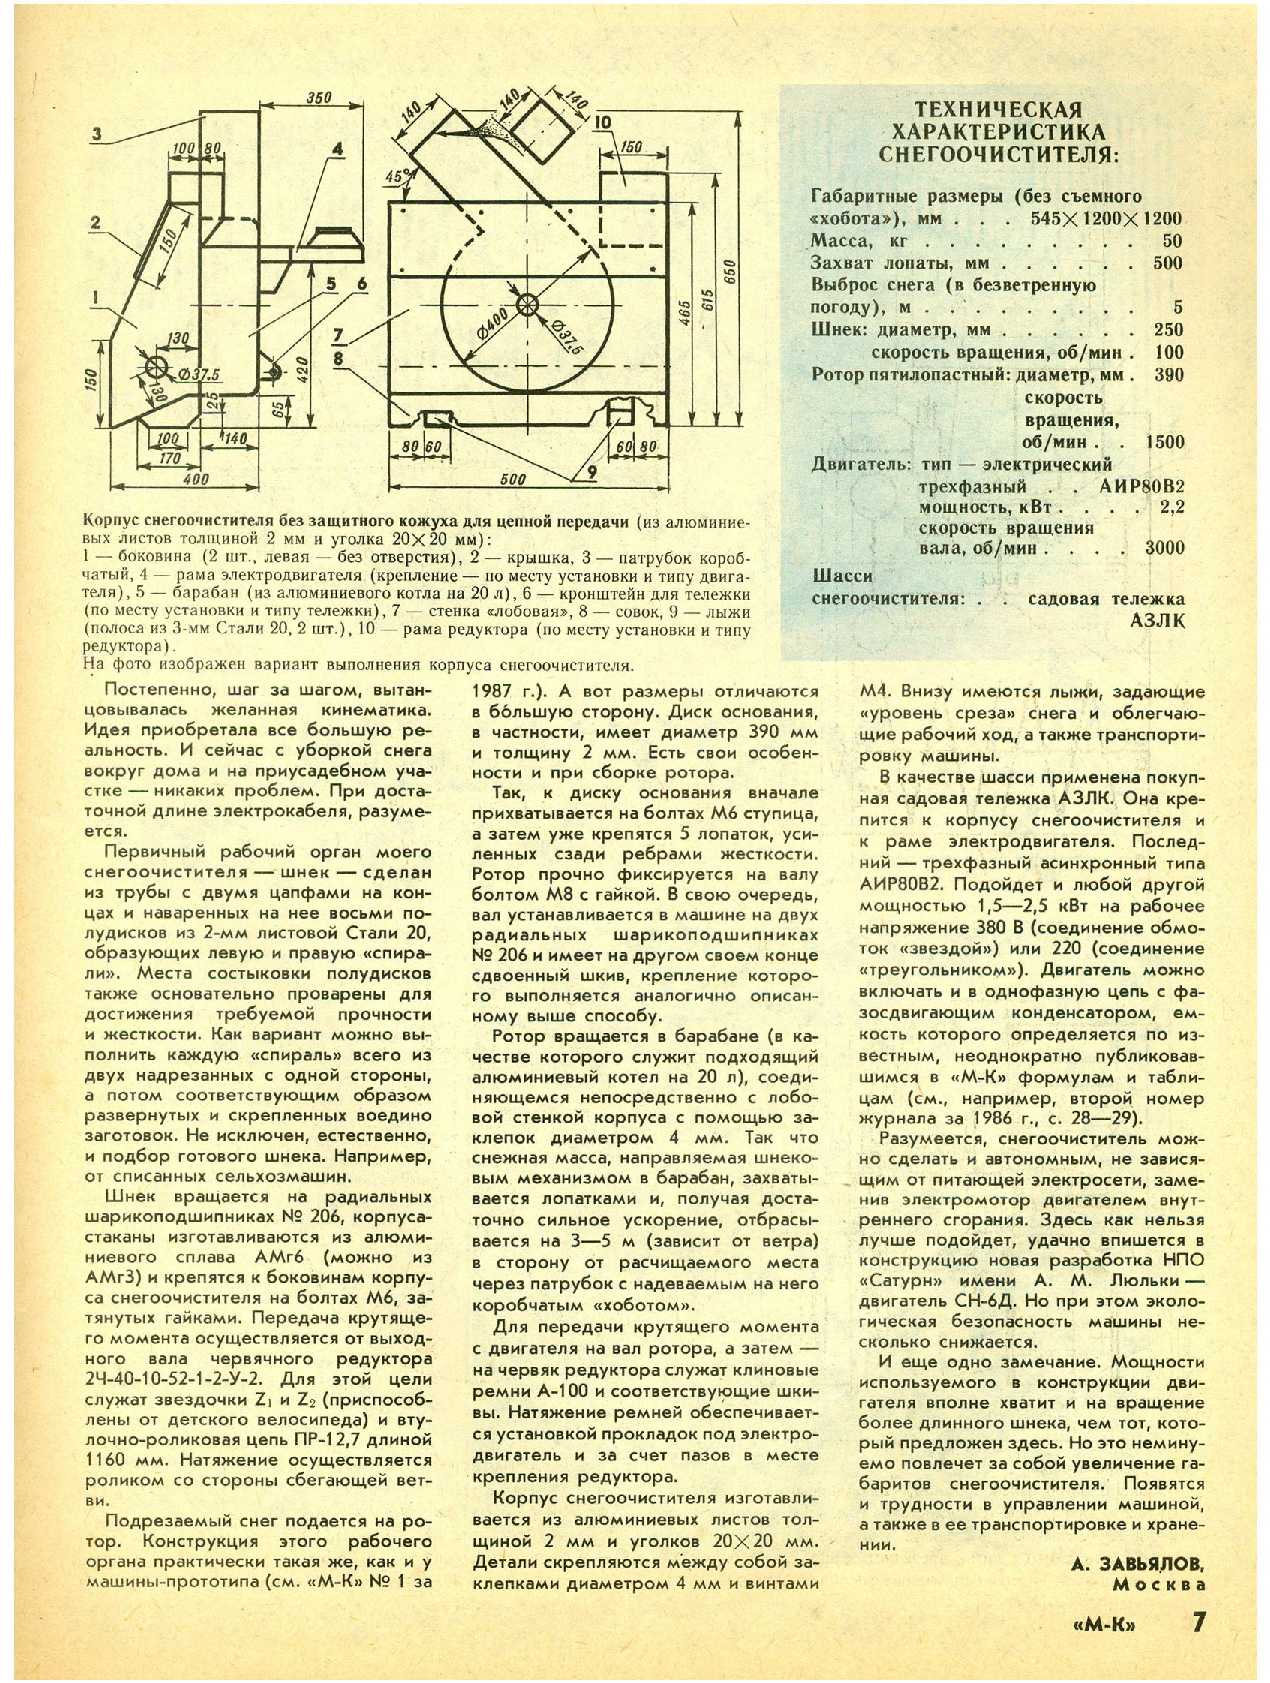 МК 3-4, 1992, 7 c.